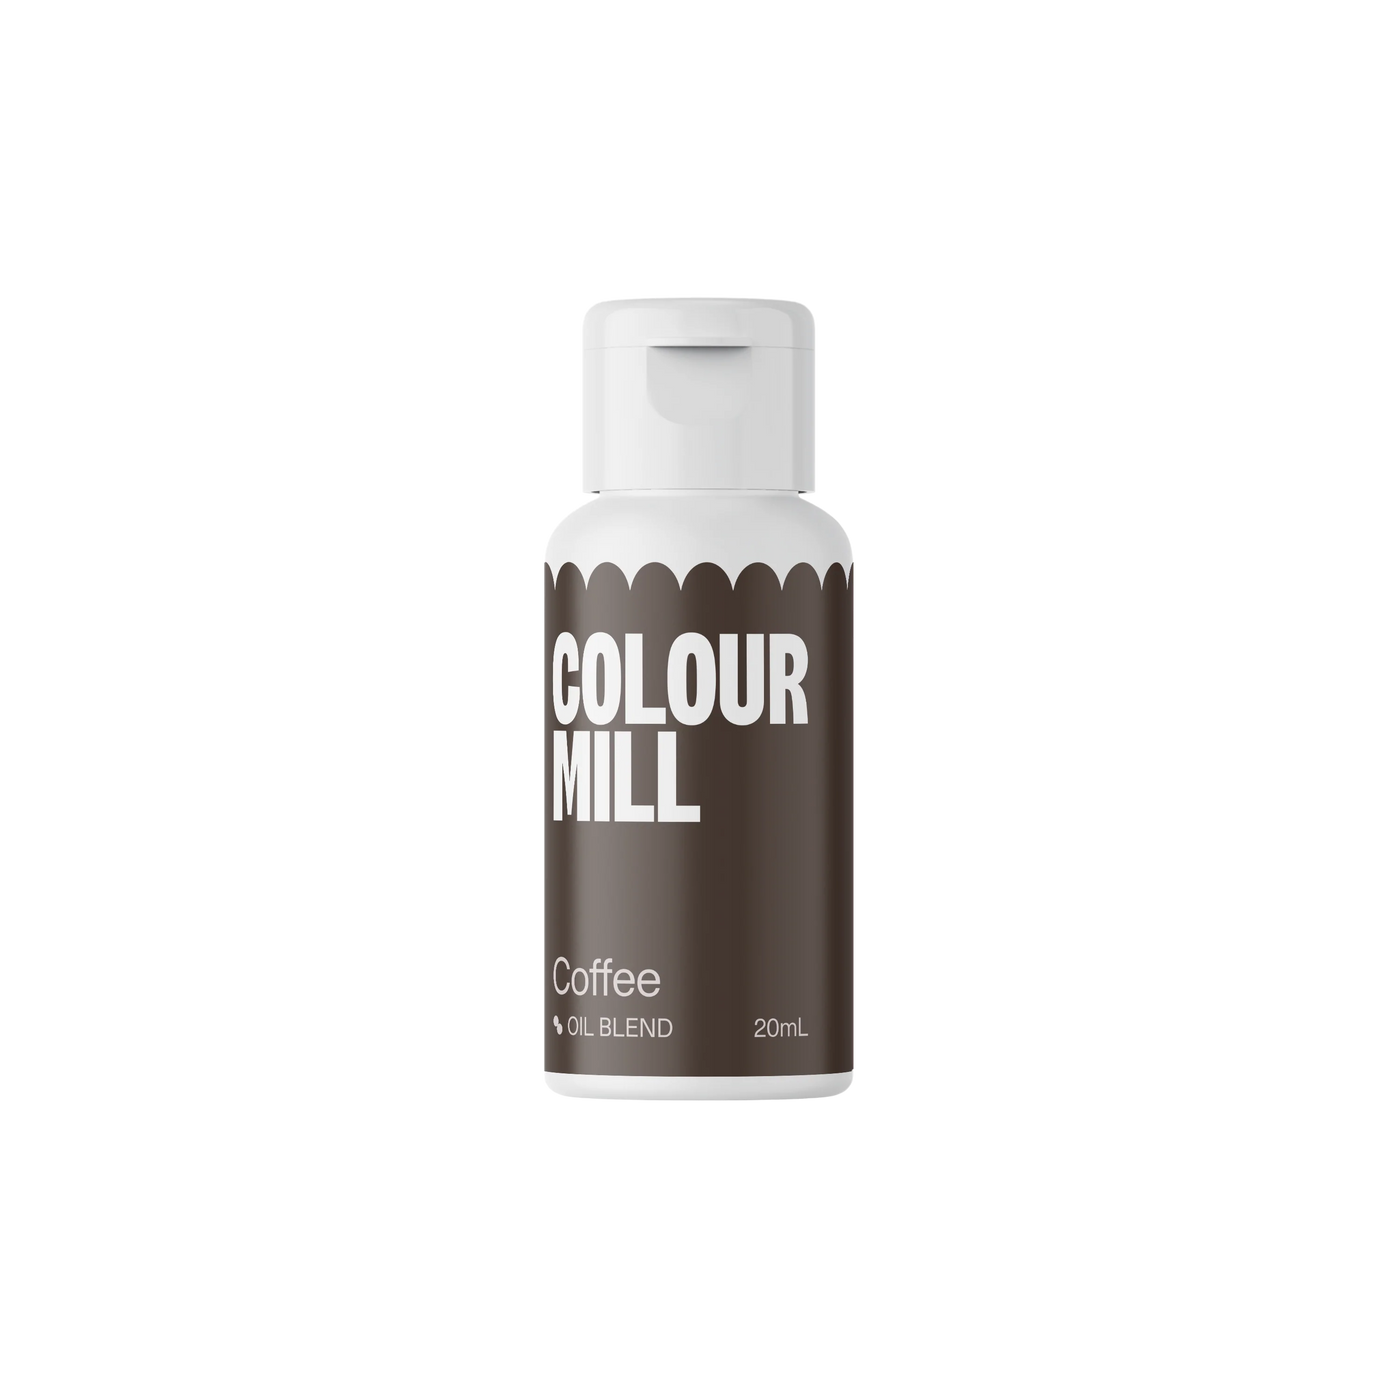 Χρώμα Πάστας Coffee oil based Colour Mill 20 ml.